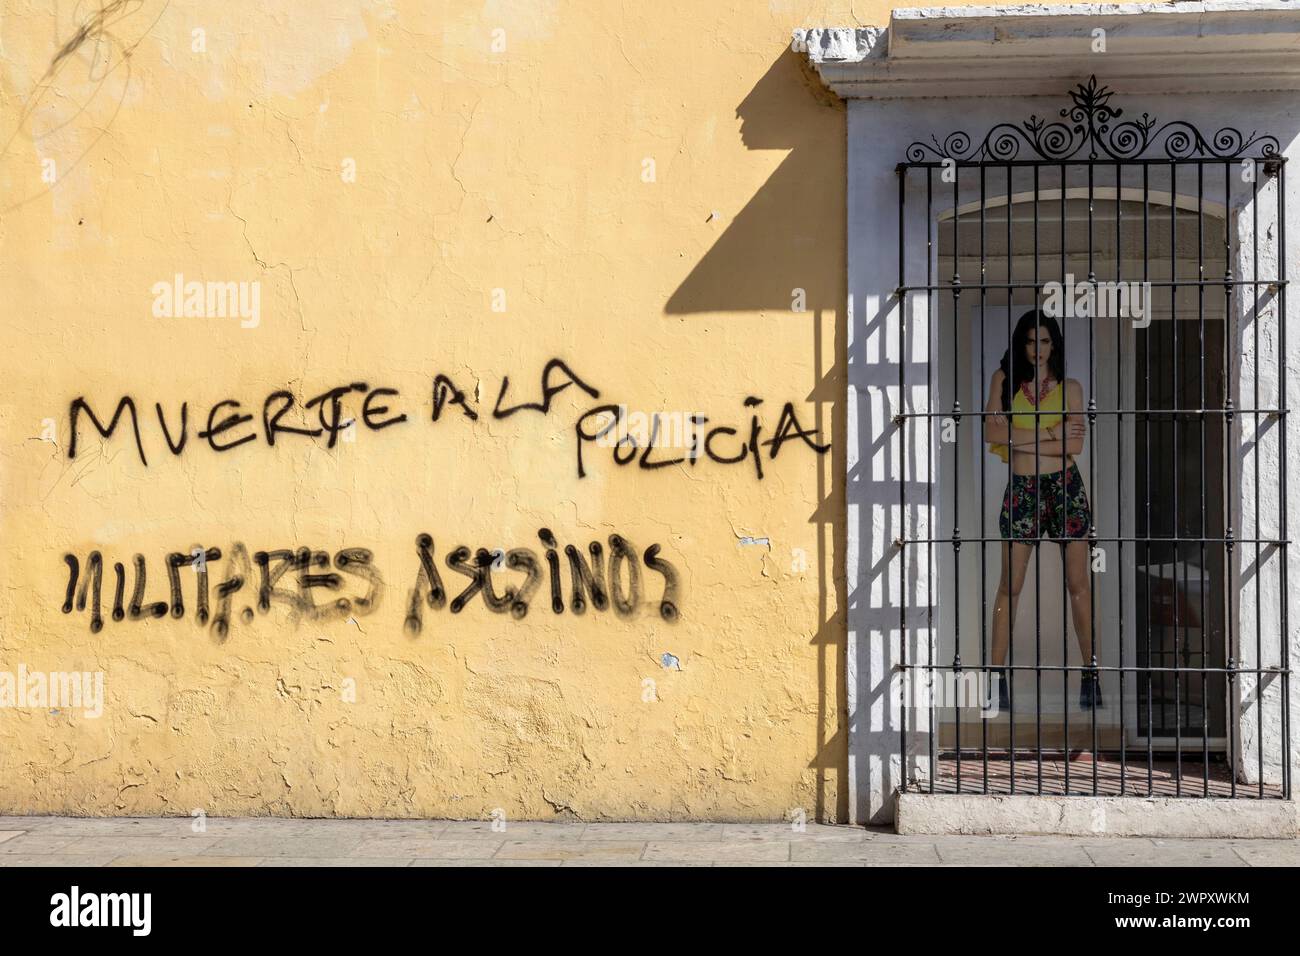 Oaxaca, México - La pared de una tienda está adornada con graffiti anti-policía. Foto de stock